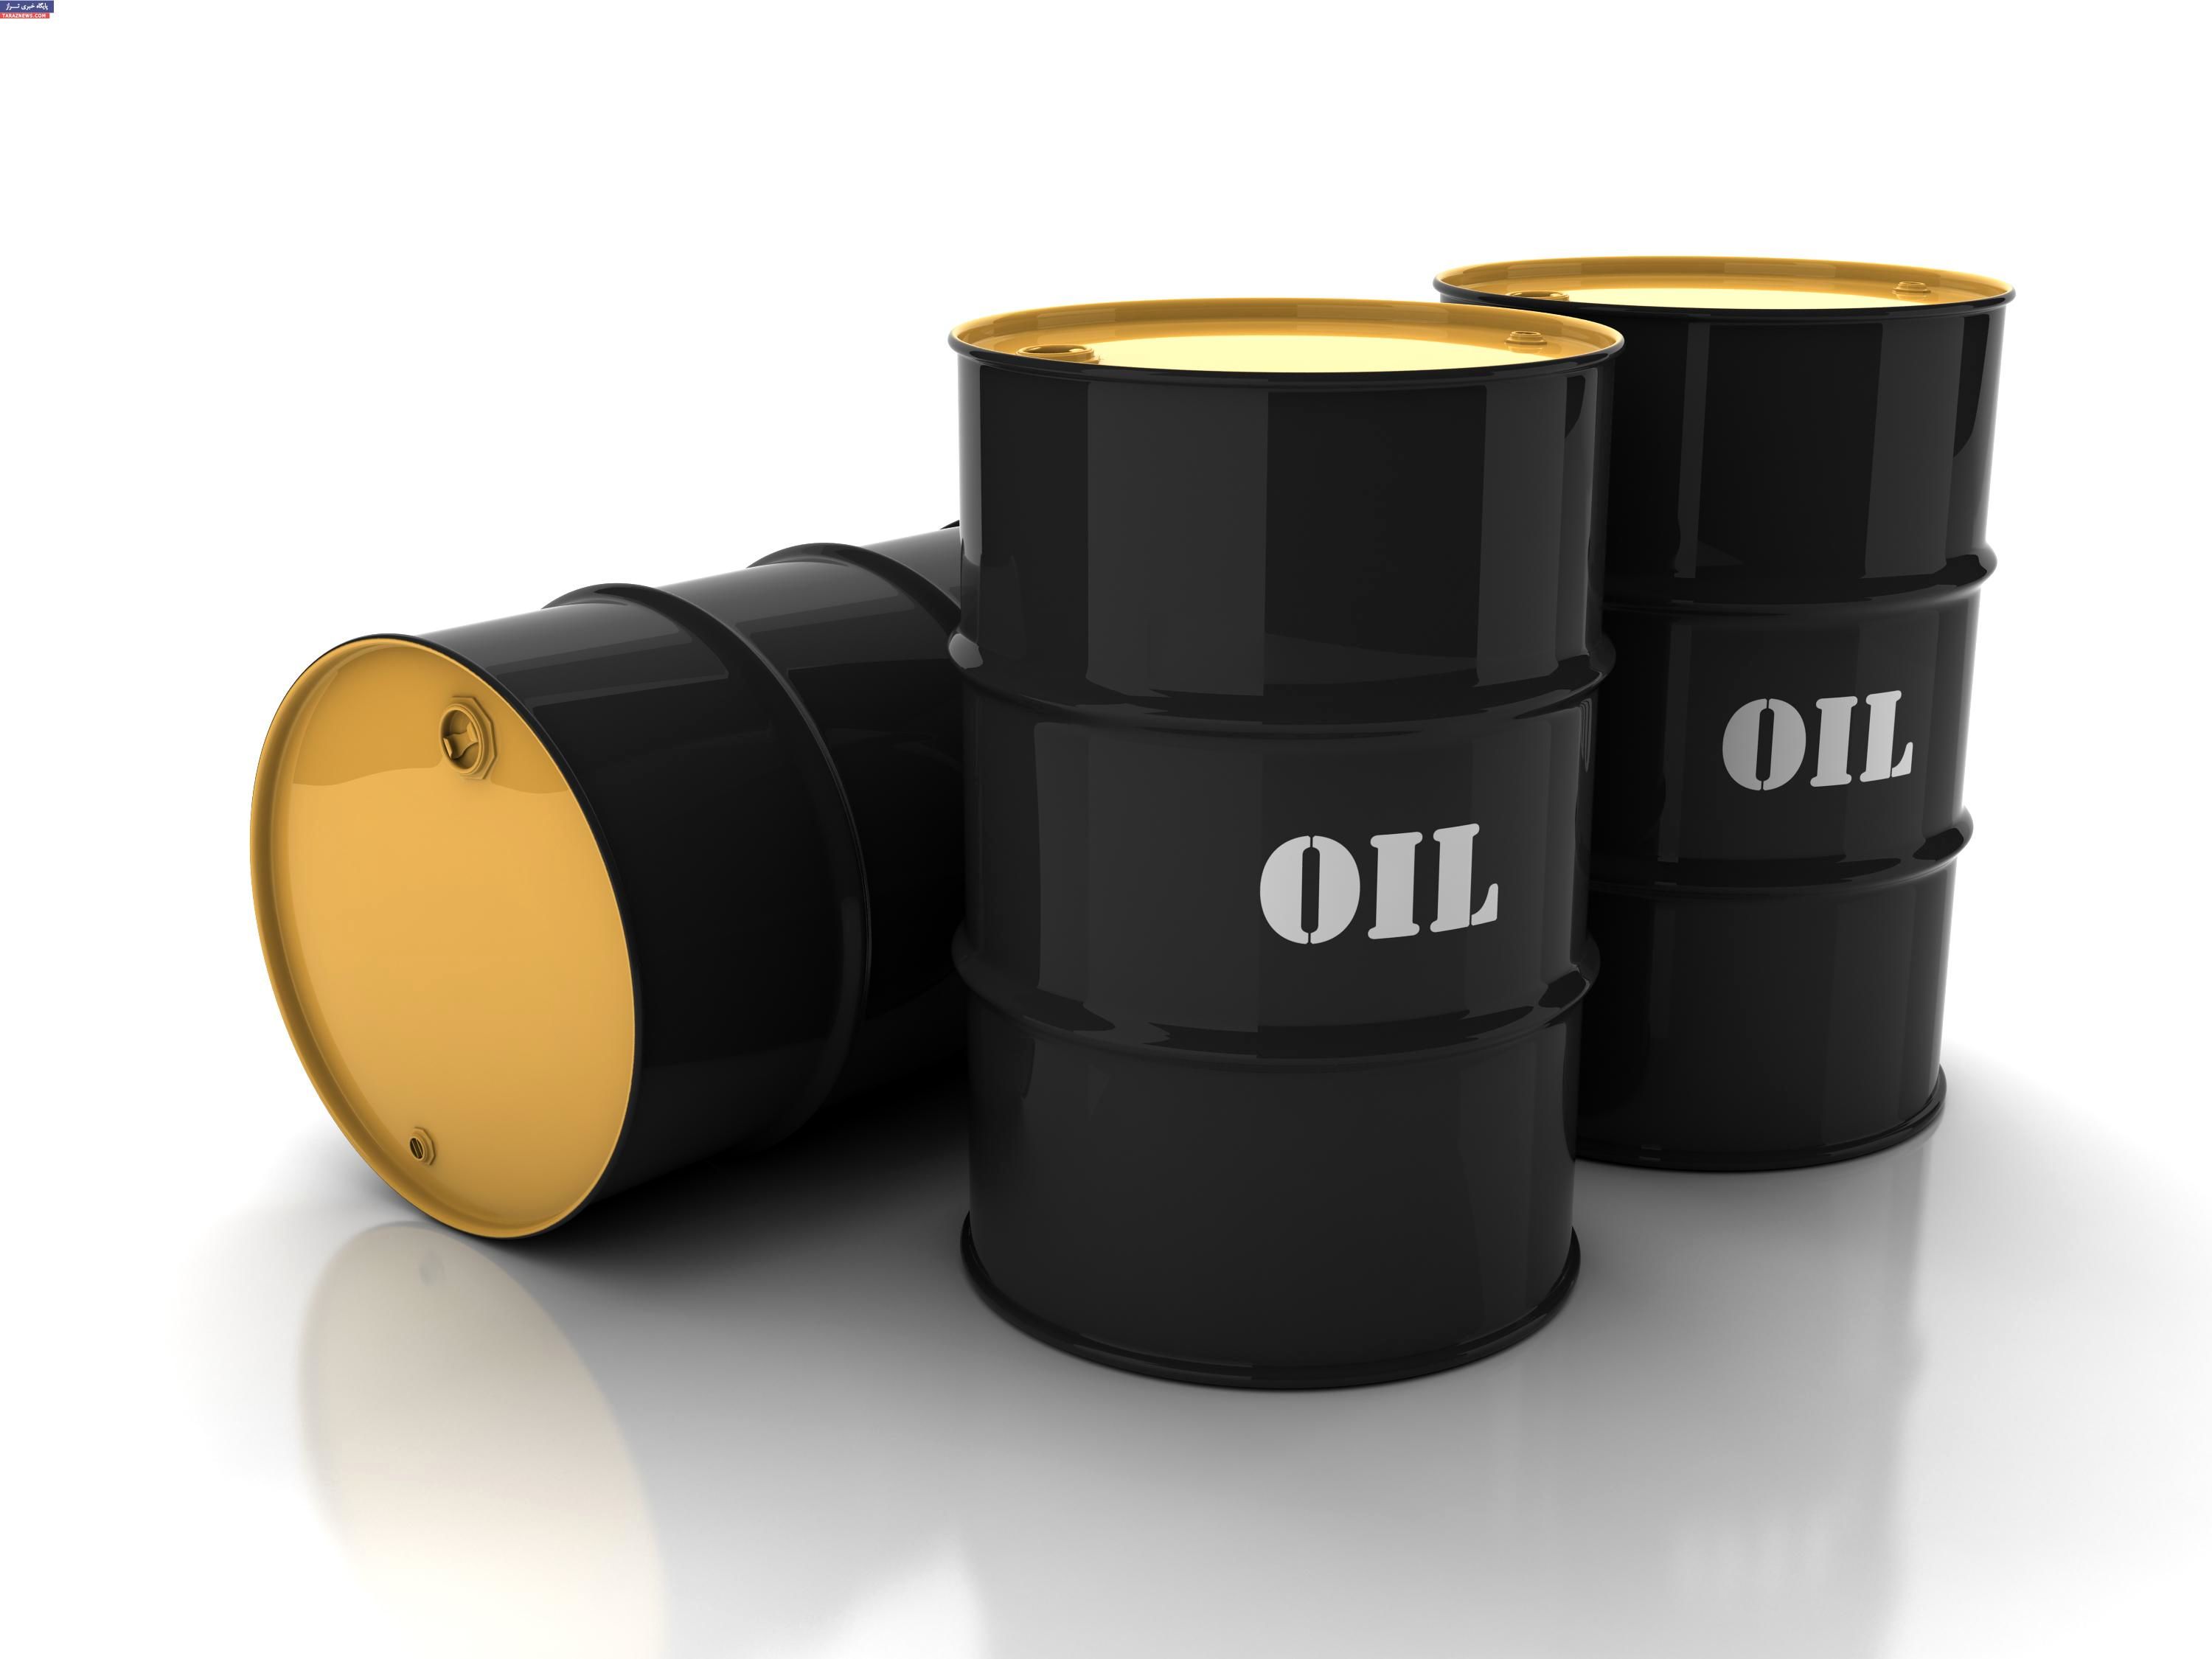 
میانگین قیمت نفت سنگین ایران به بشکه ای 49 دلار و 35 سنت رسید